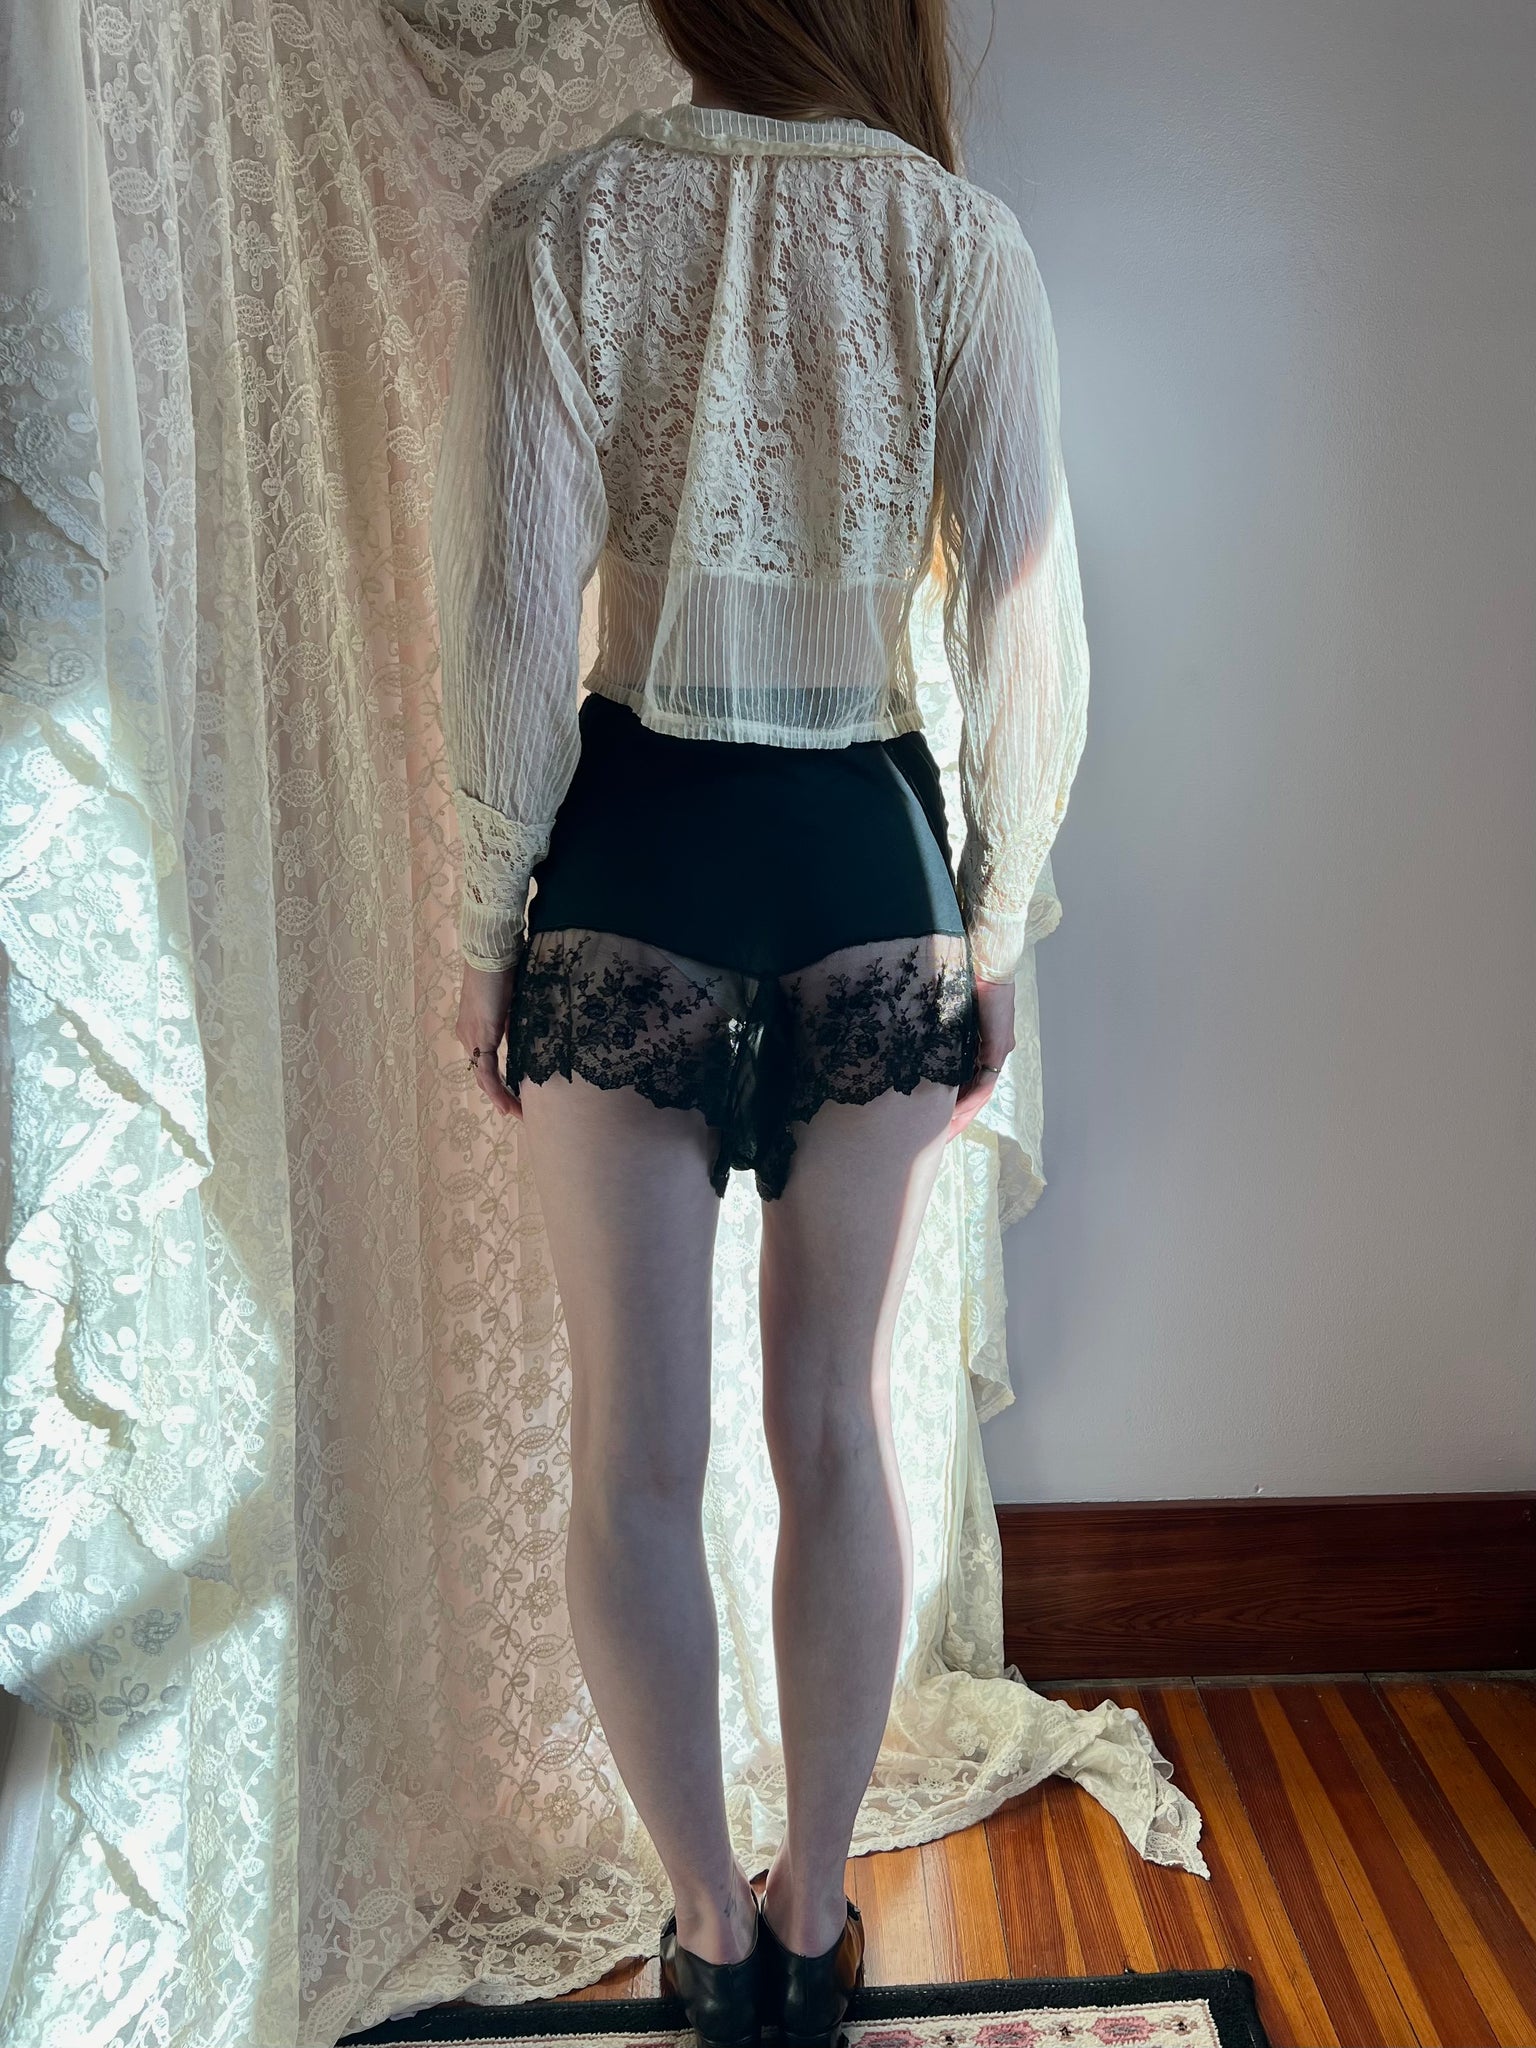 1930s Silk Chiffon Lace Tap Shorts Black